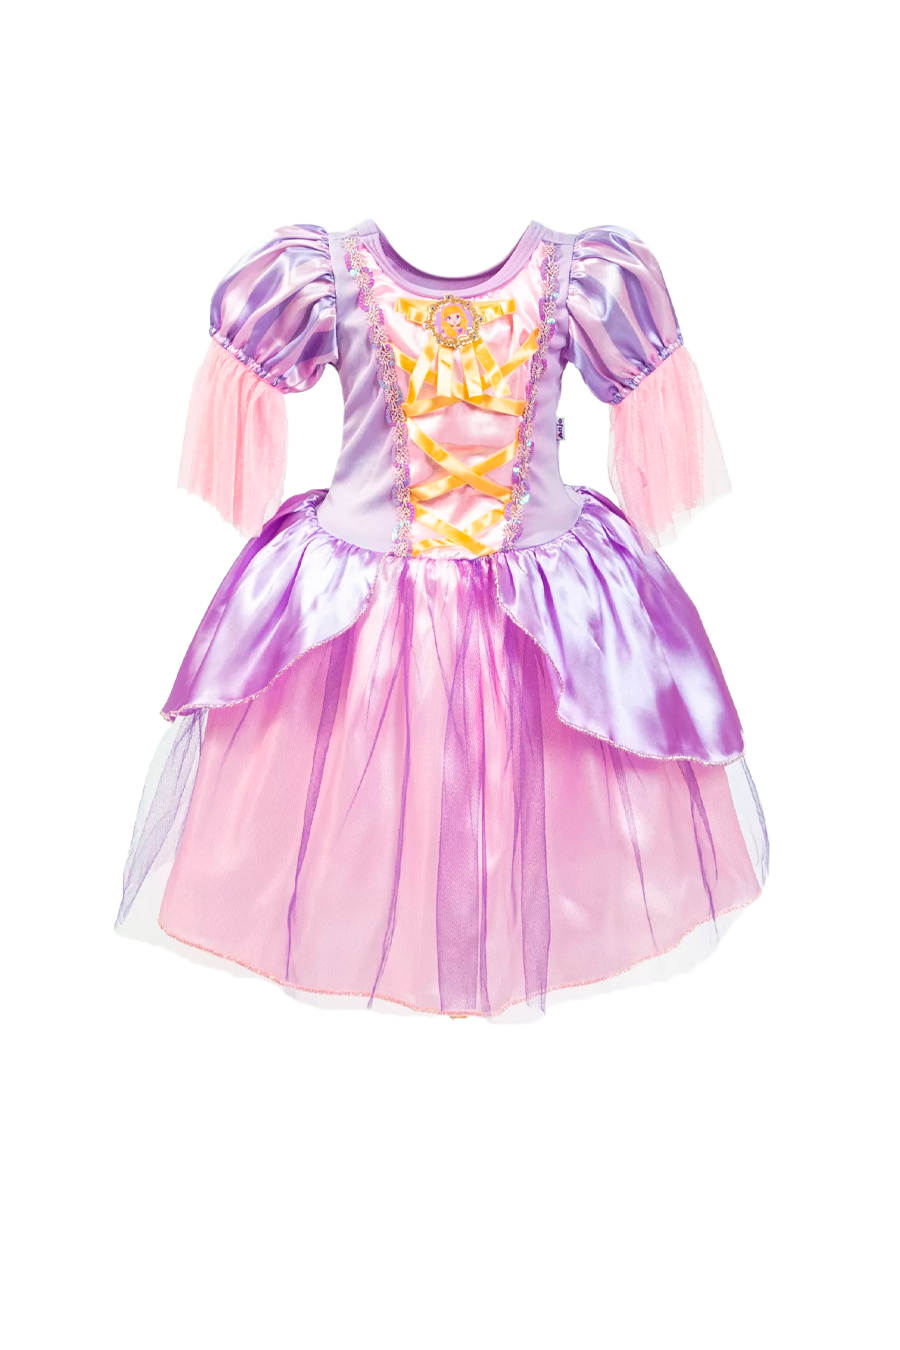 Vestido Fantasia Infantil Princesinha Sofia - Emfantasy